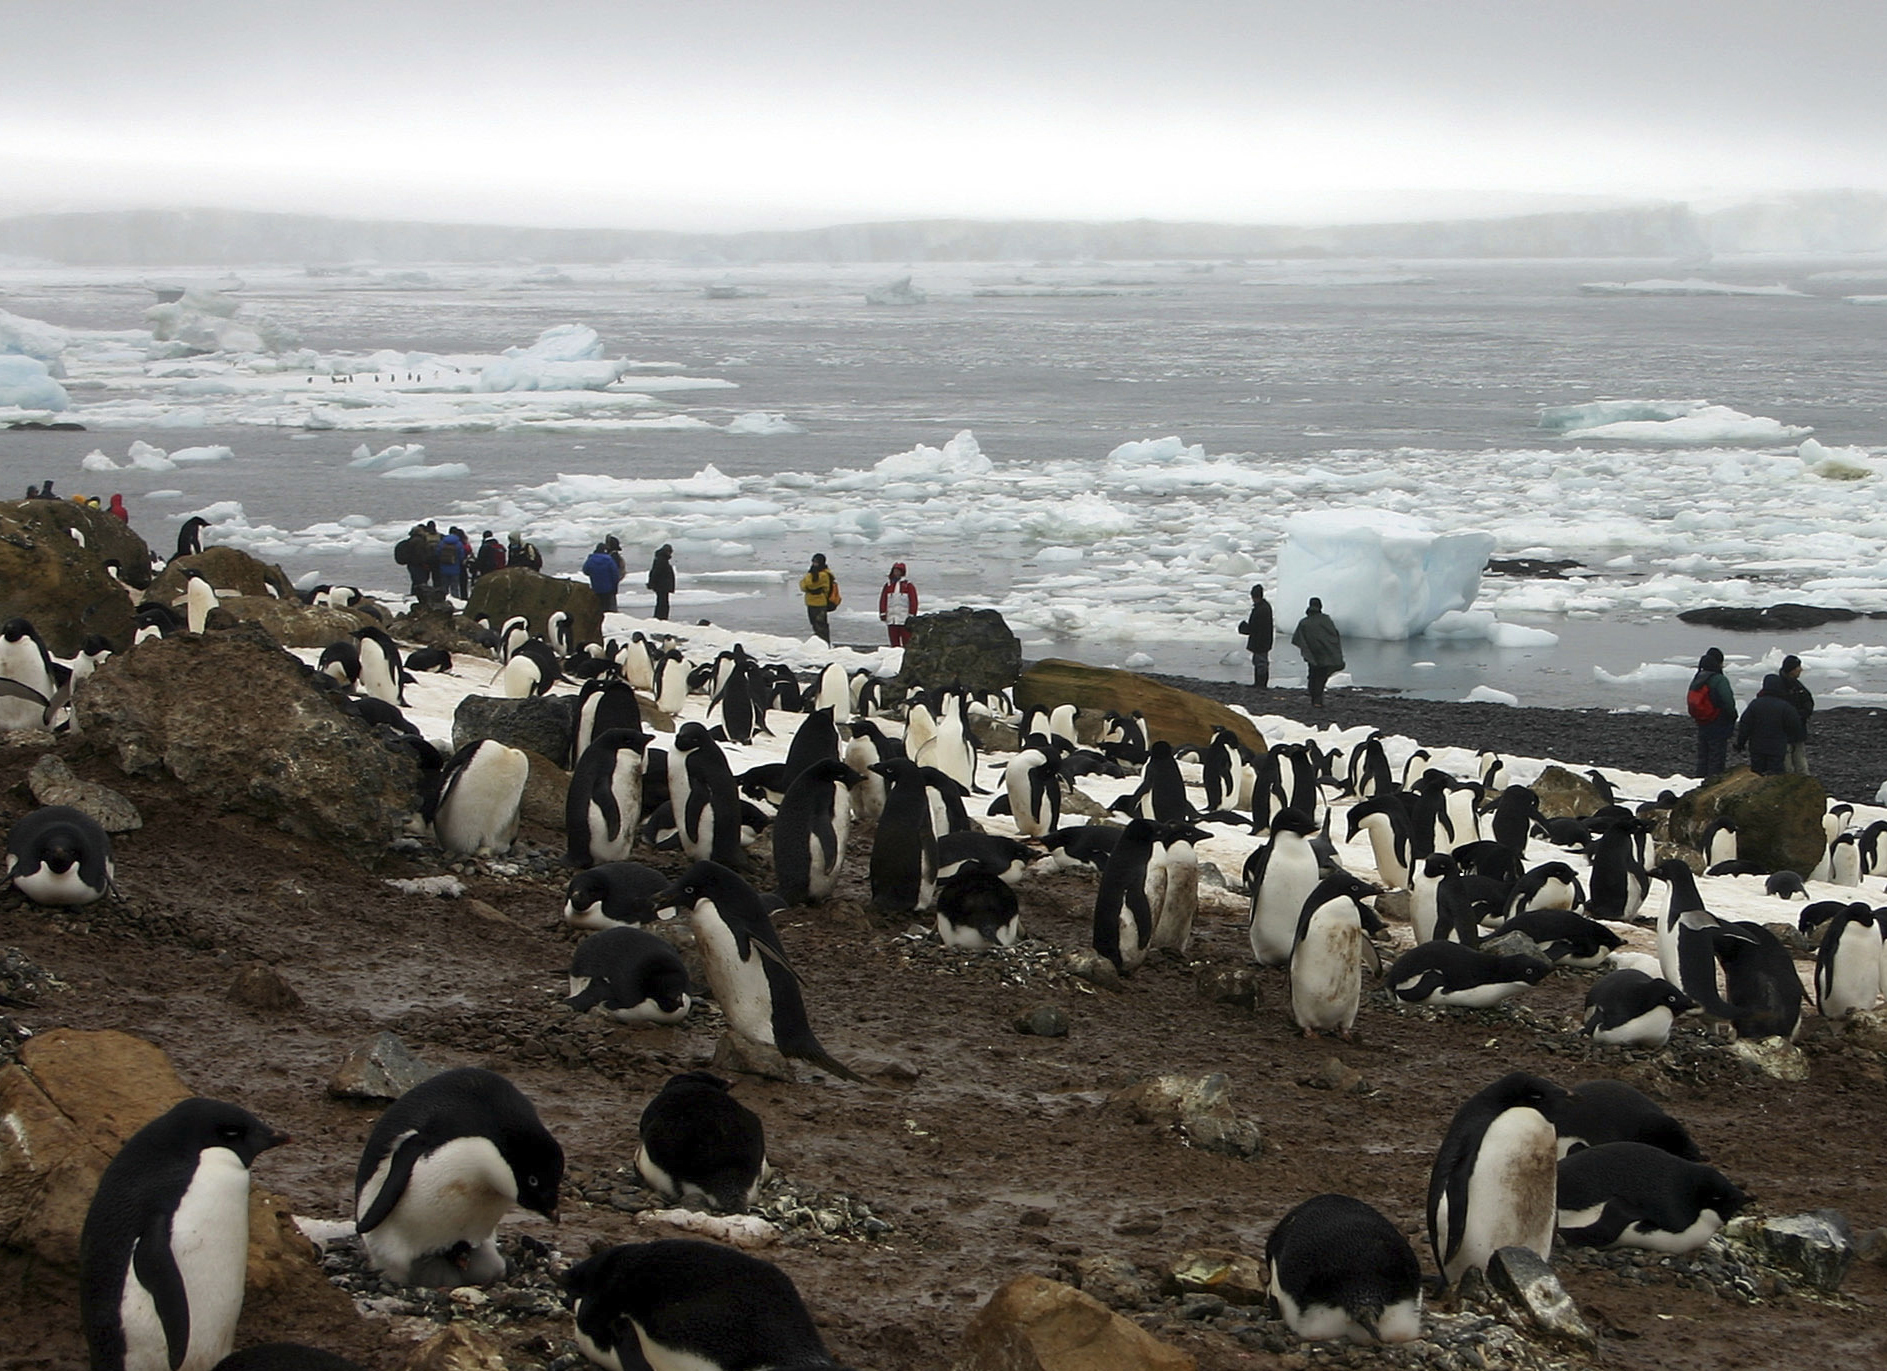 澳洲联邦大学一份声明指出，他们上月进行的一次南极考察研究，发现至少532只死亡的阿德利企鹅，甚至估计实际上已有上千只阿德利企鹅死亡。图为阿德利企鹅示意图。美联社